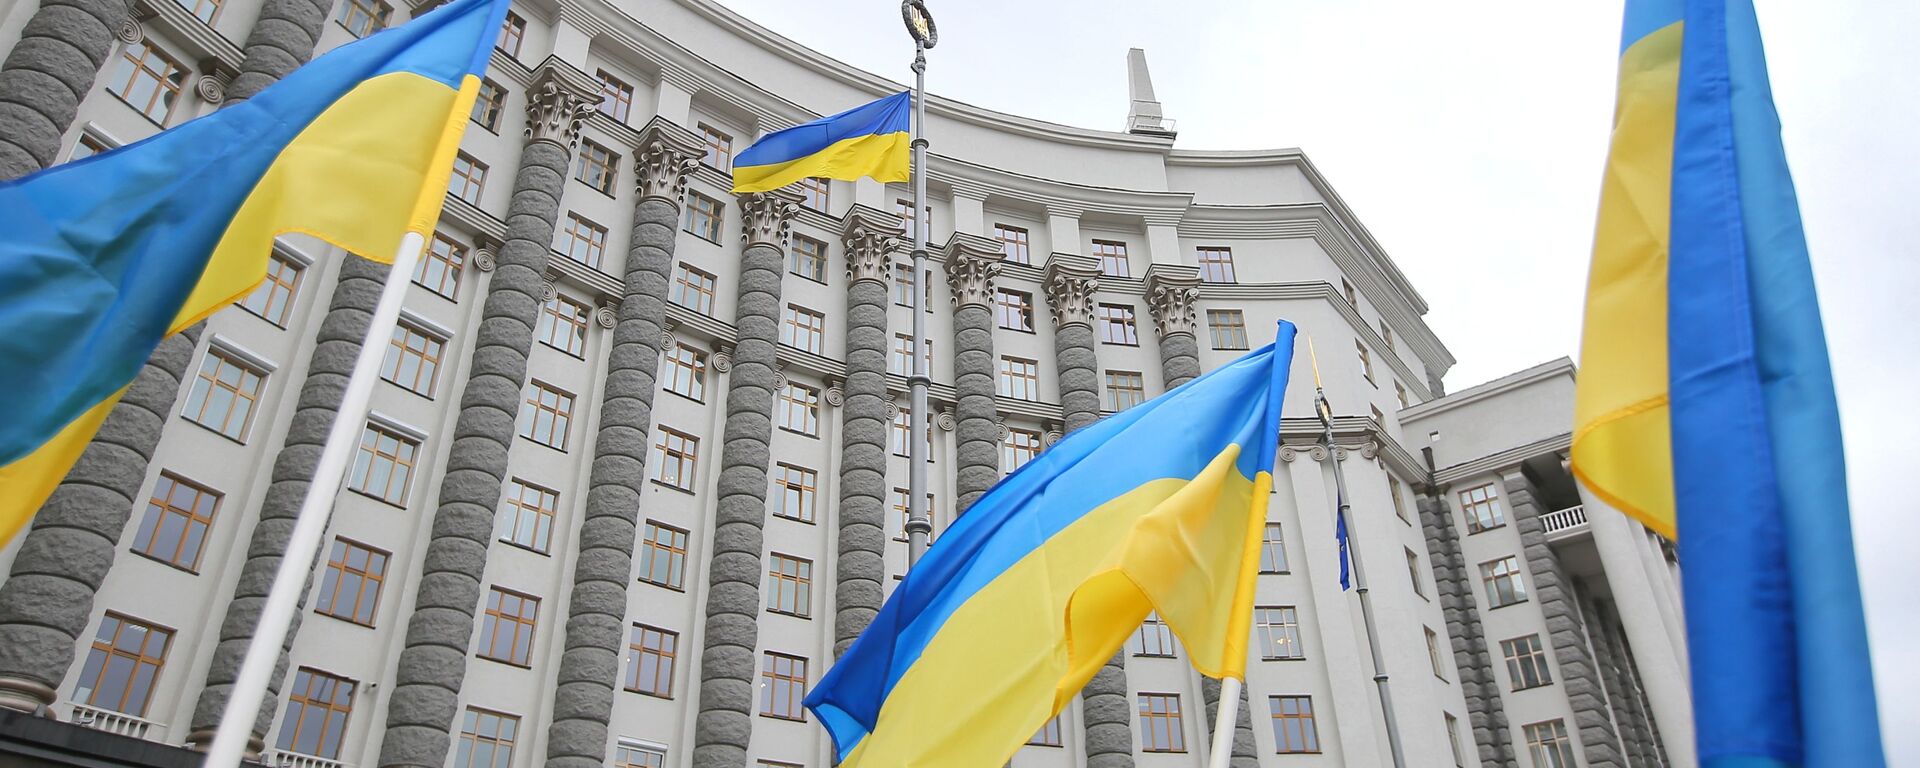 Здание правительства Украины в Киеве - Sputnik Грузия, 1920, 20.08.2021